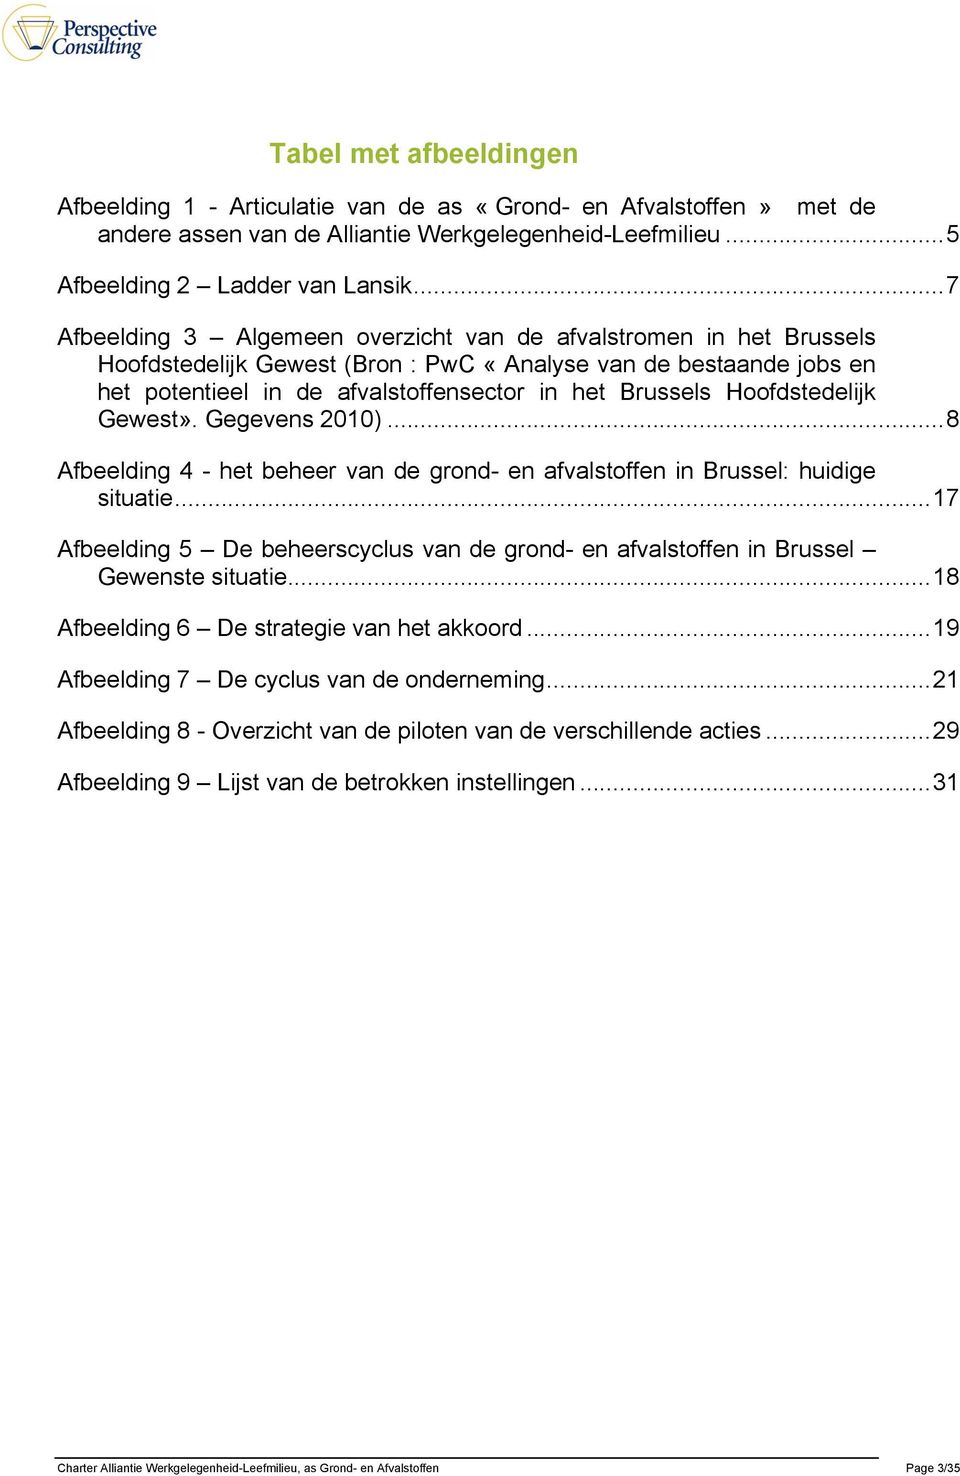 Hoofdstedelijk Gewest». Gegevens 2010)... 8 Afbeelding 4 - het beheer van de grond- en afvalstoffen in Brussel: huidige situatie.